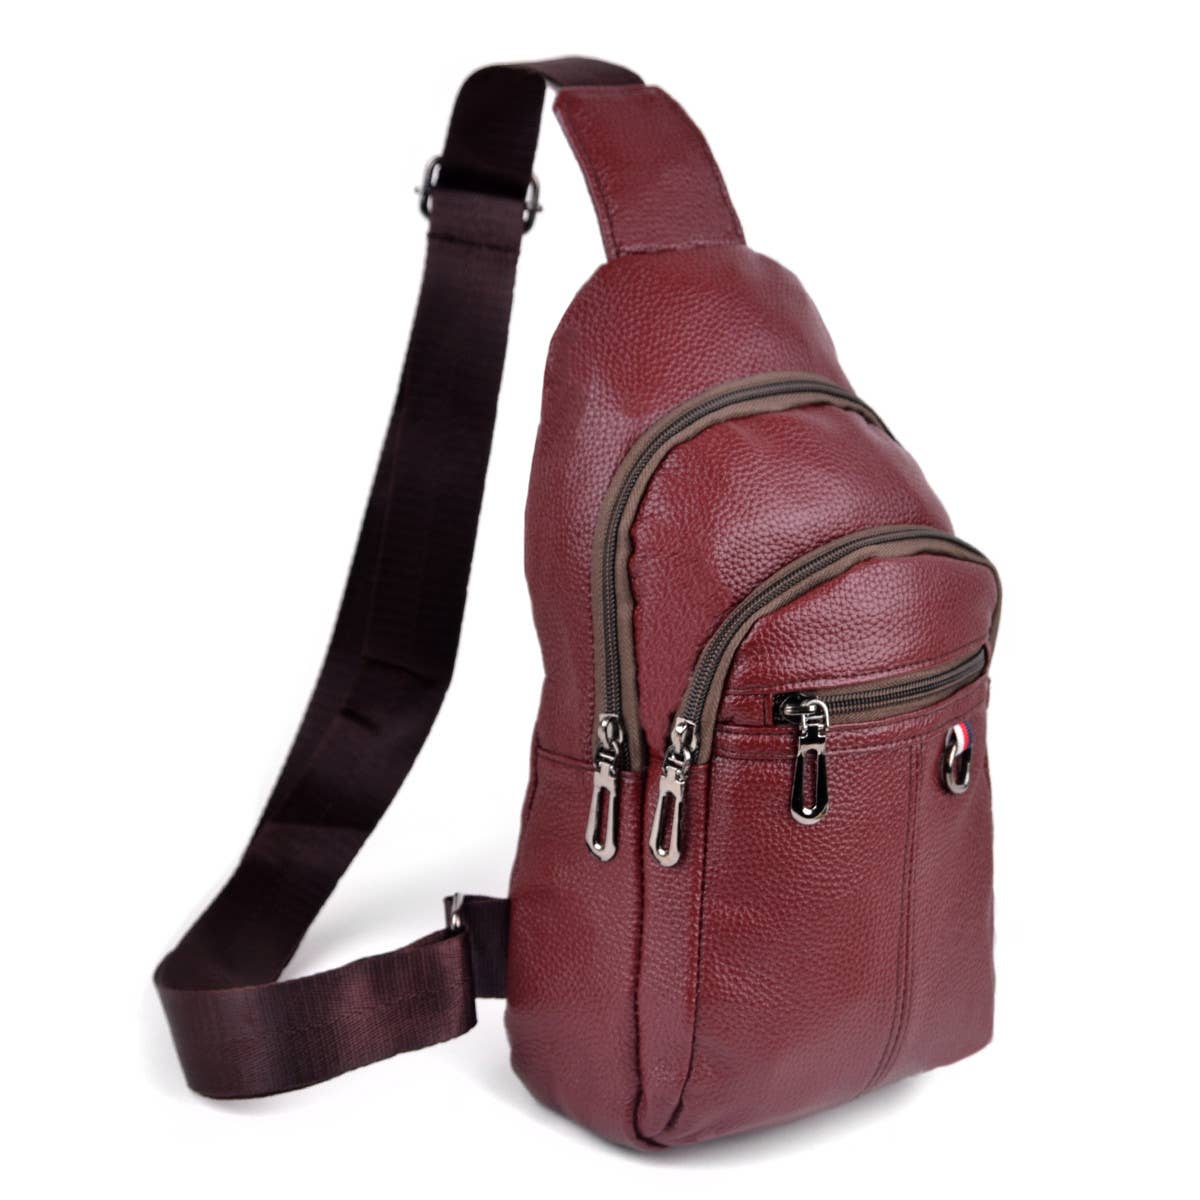 Leather Crossbody Sling Shoulder Bag: Burgundy